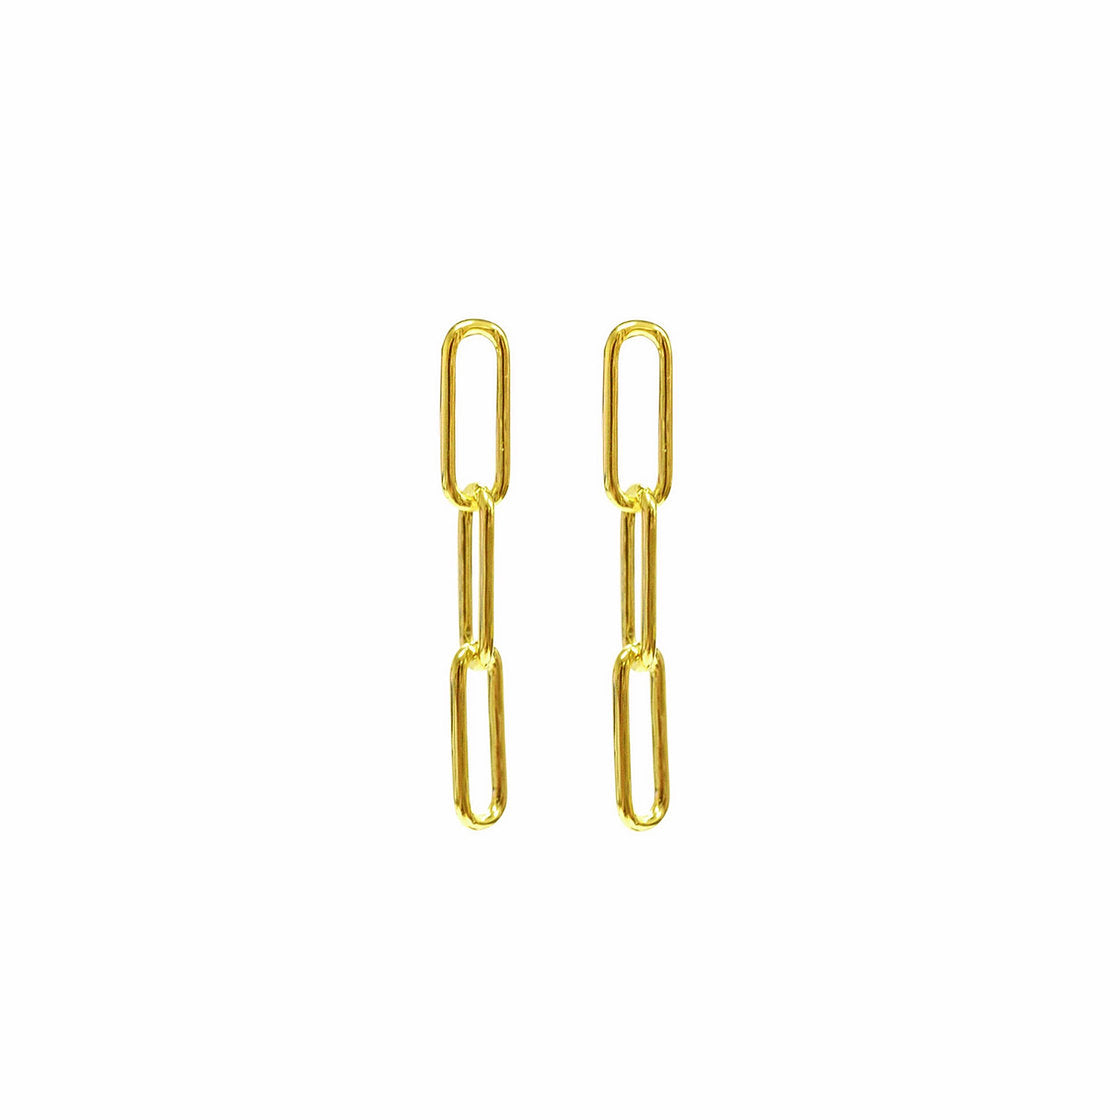 Links - 18K Yellow Gold Links Earring